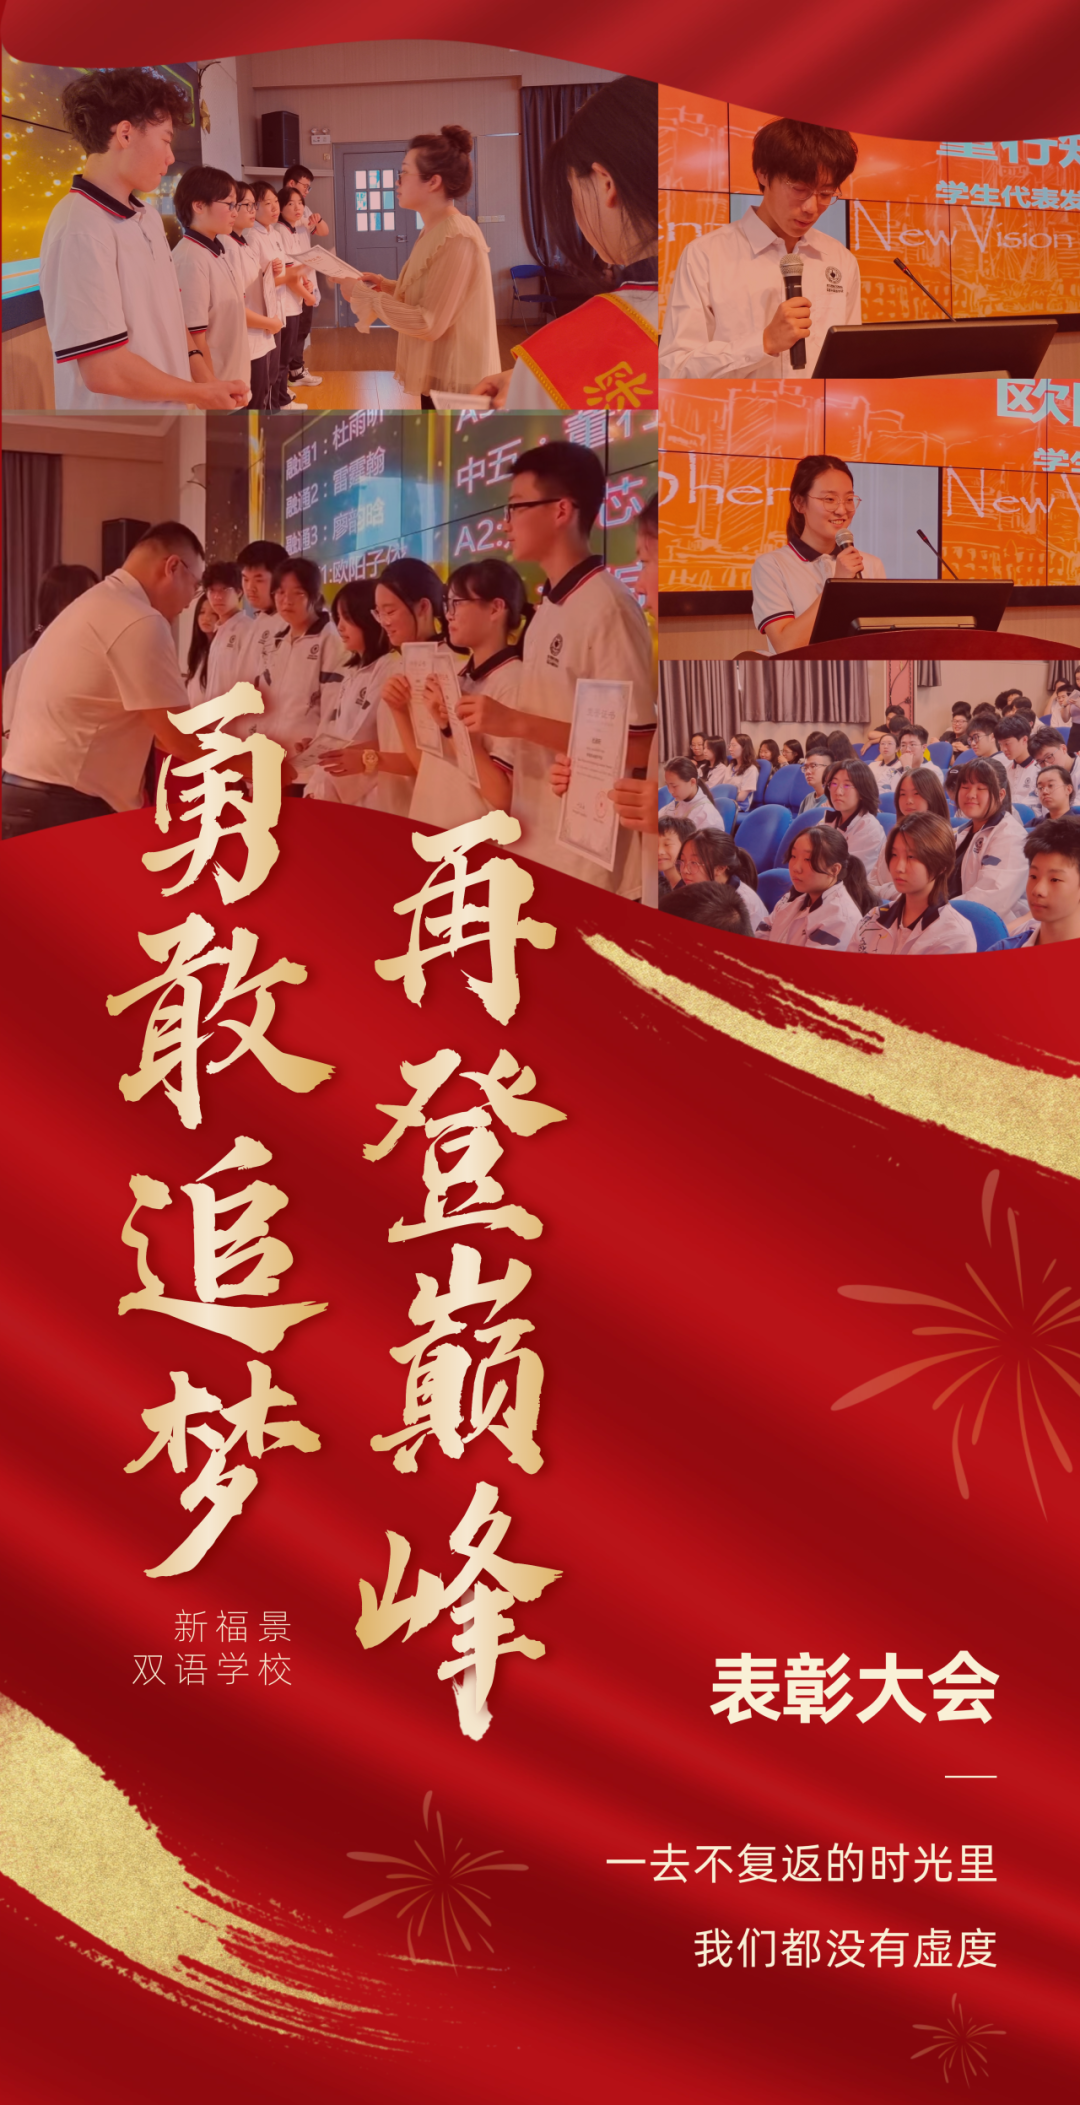 勇敢追梦，再登巅峰！新福景双语学校表彰大会来啦！